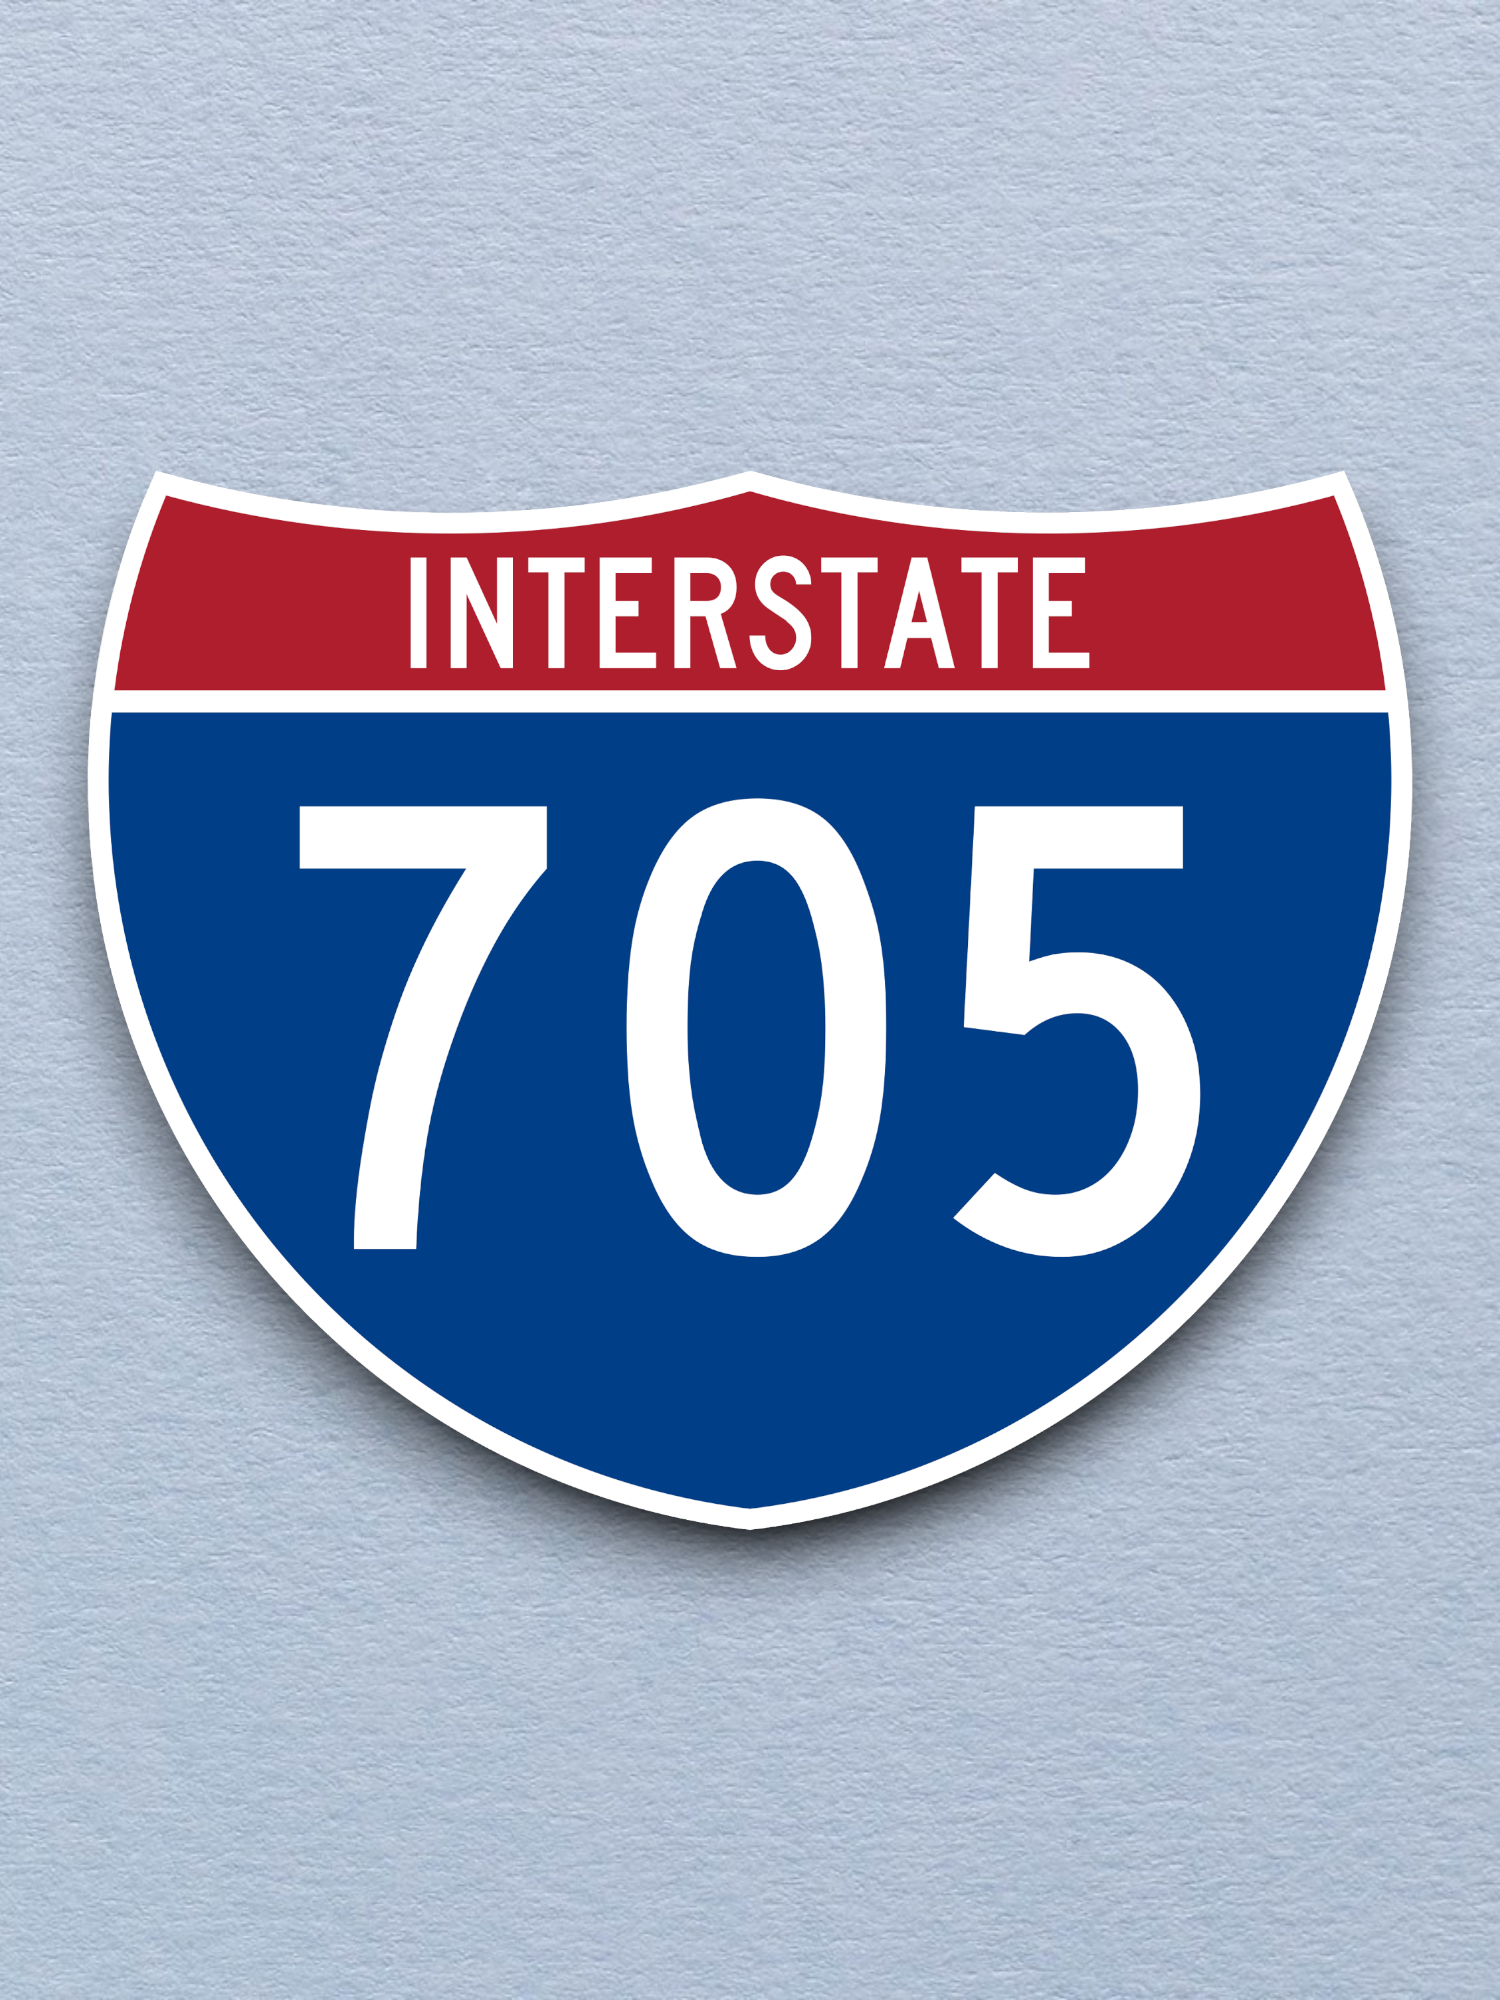 Interstate I-705 Sticker